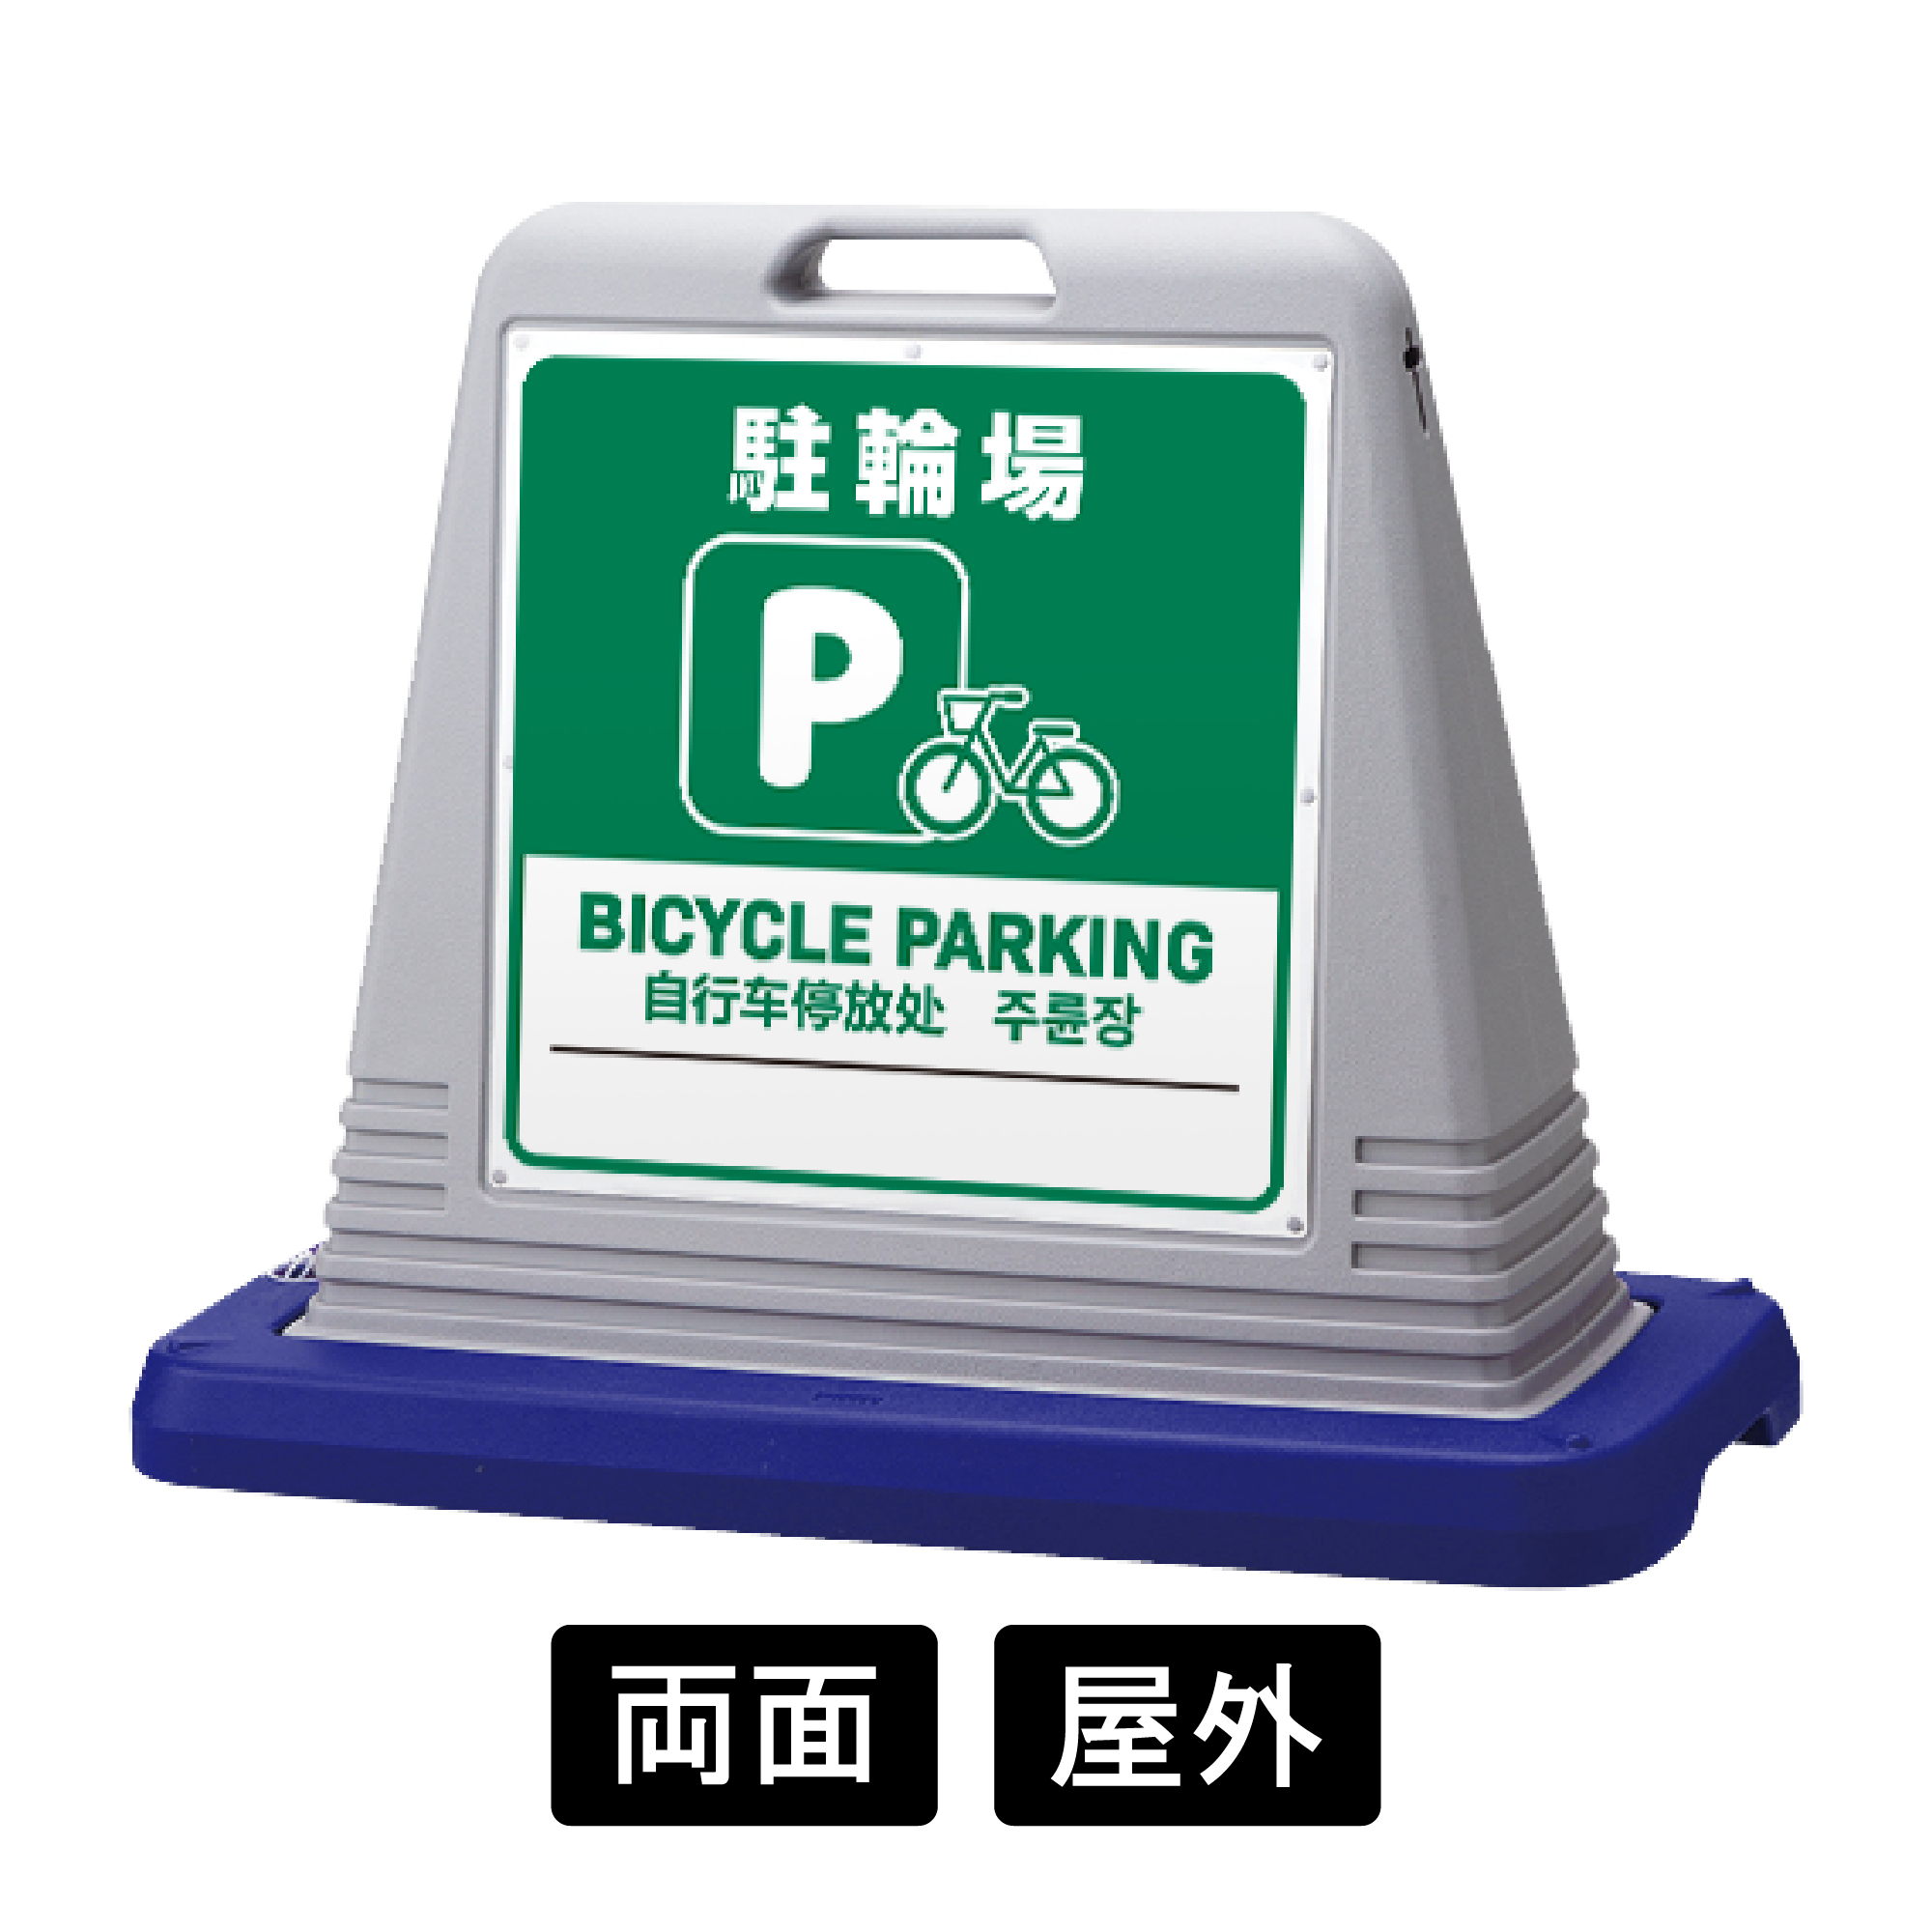 サインキューブ 「駐輪場」 両面表示 グレー SignWebオリジナル 多言語 ユニバーサルデザイン